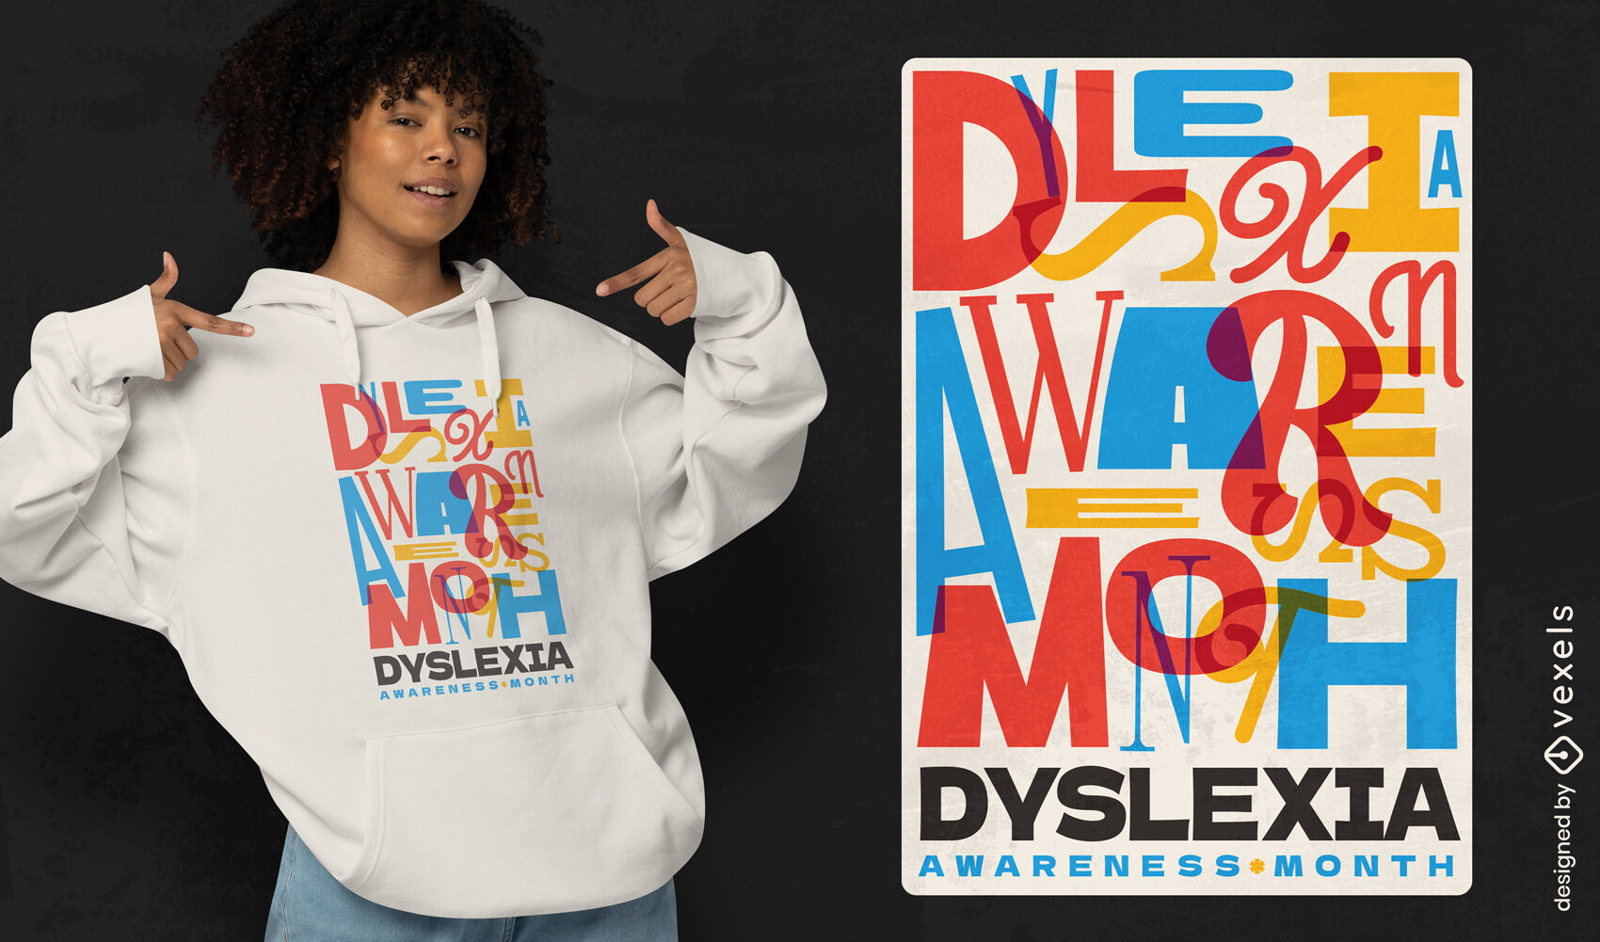 Dyslexia awareness month t-shirt  design